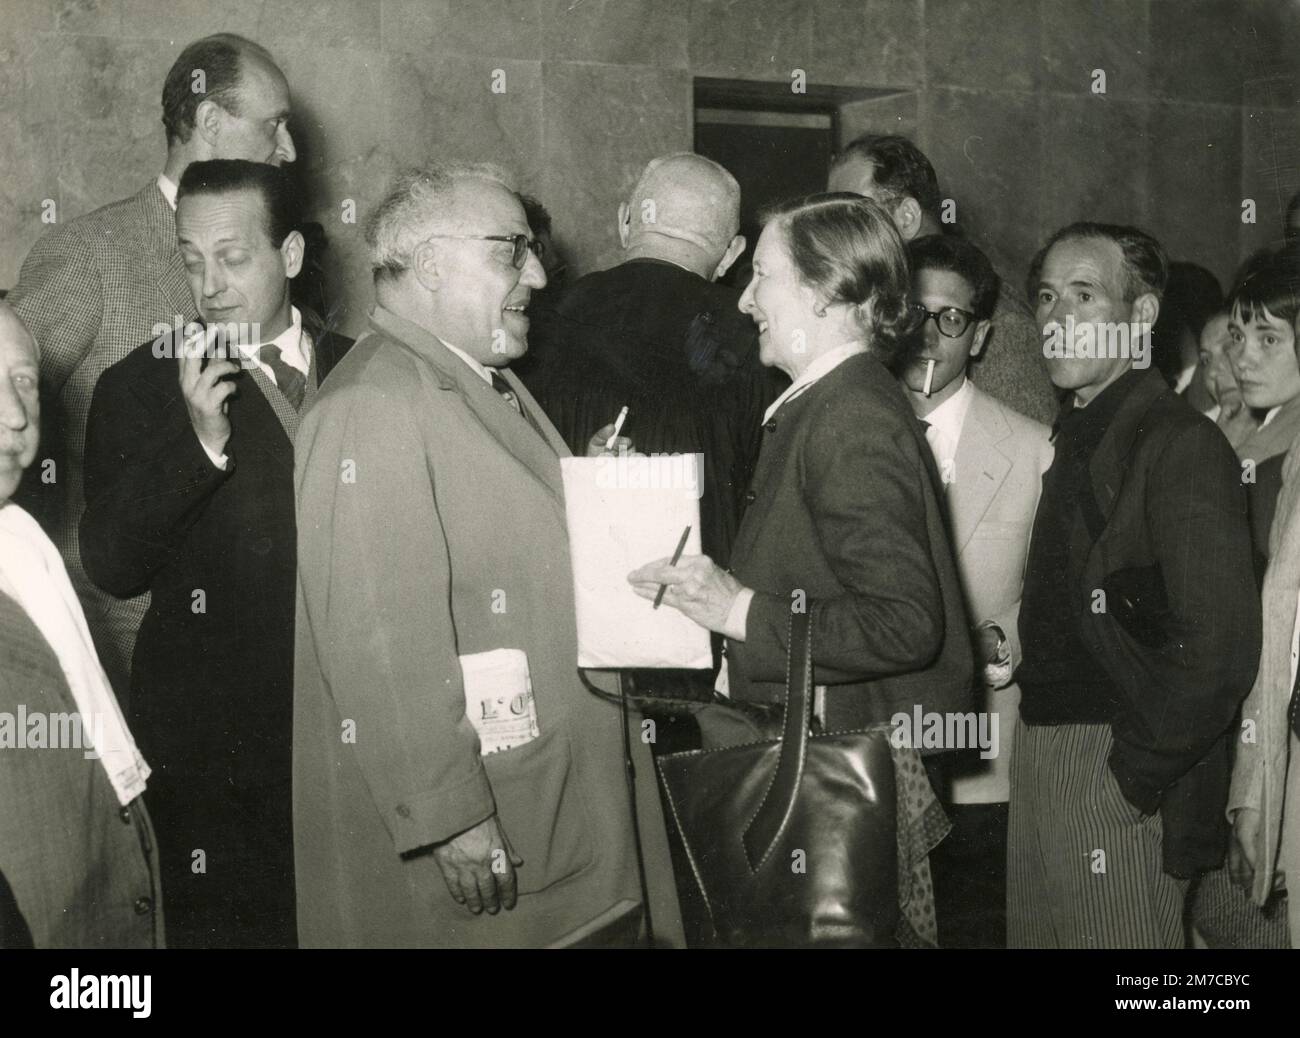 Gruppo di persone intorno a due politici, Italia 1950s Foto Stock